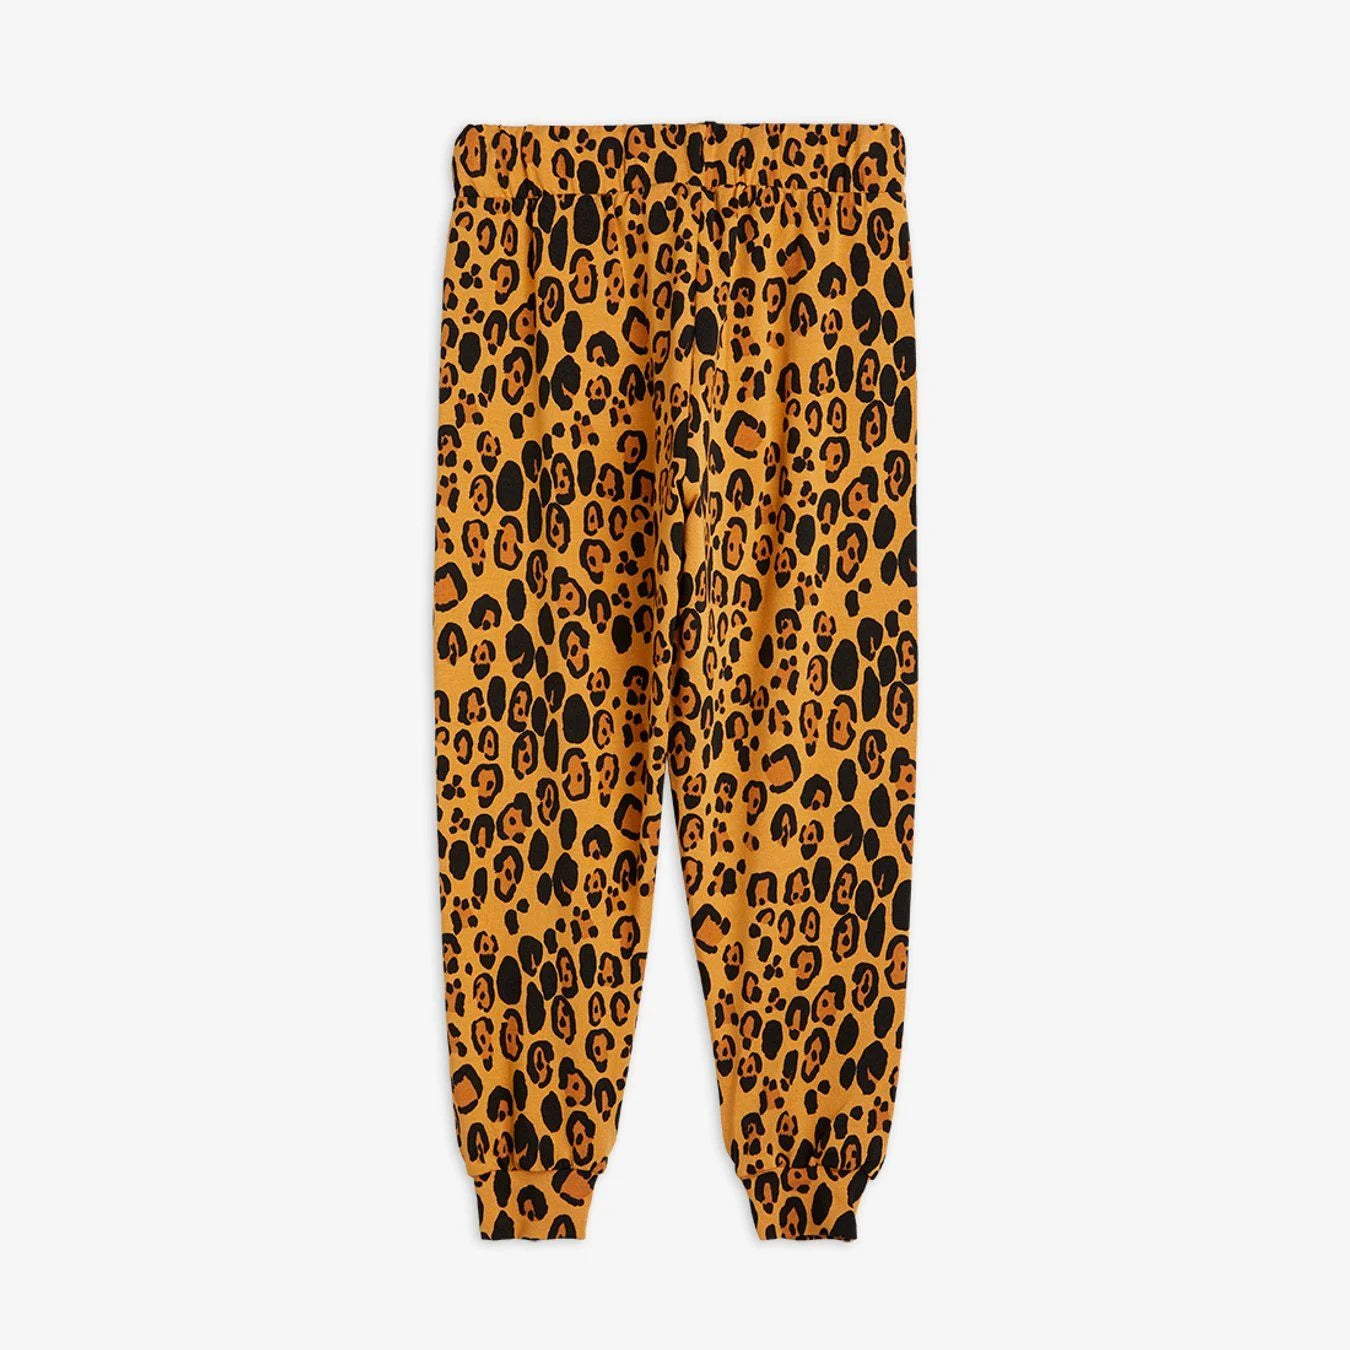 Basic leopard trousers  Beige